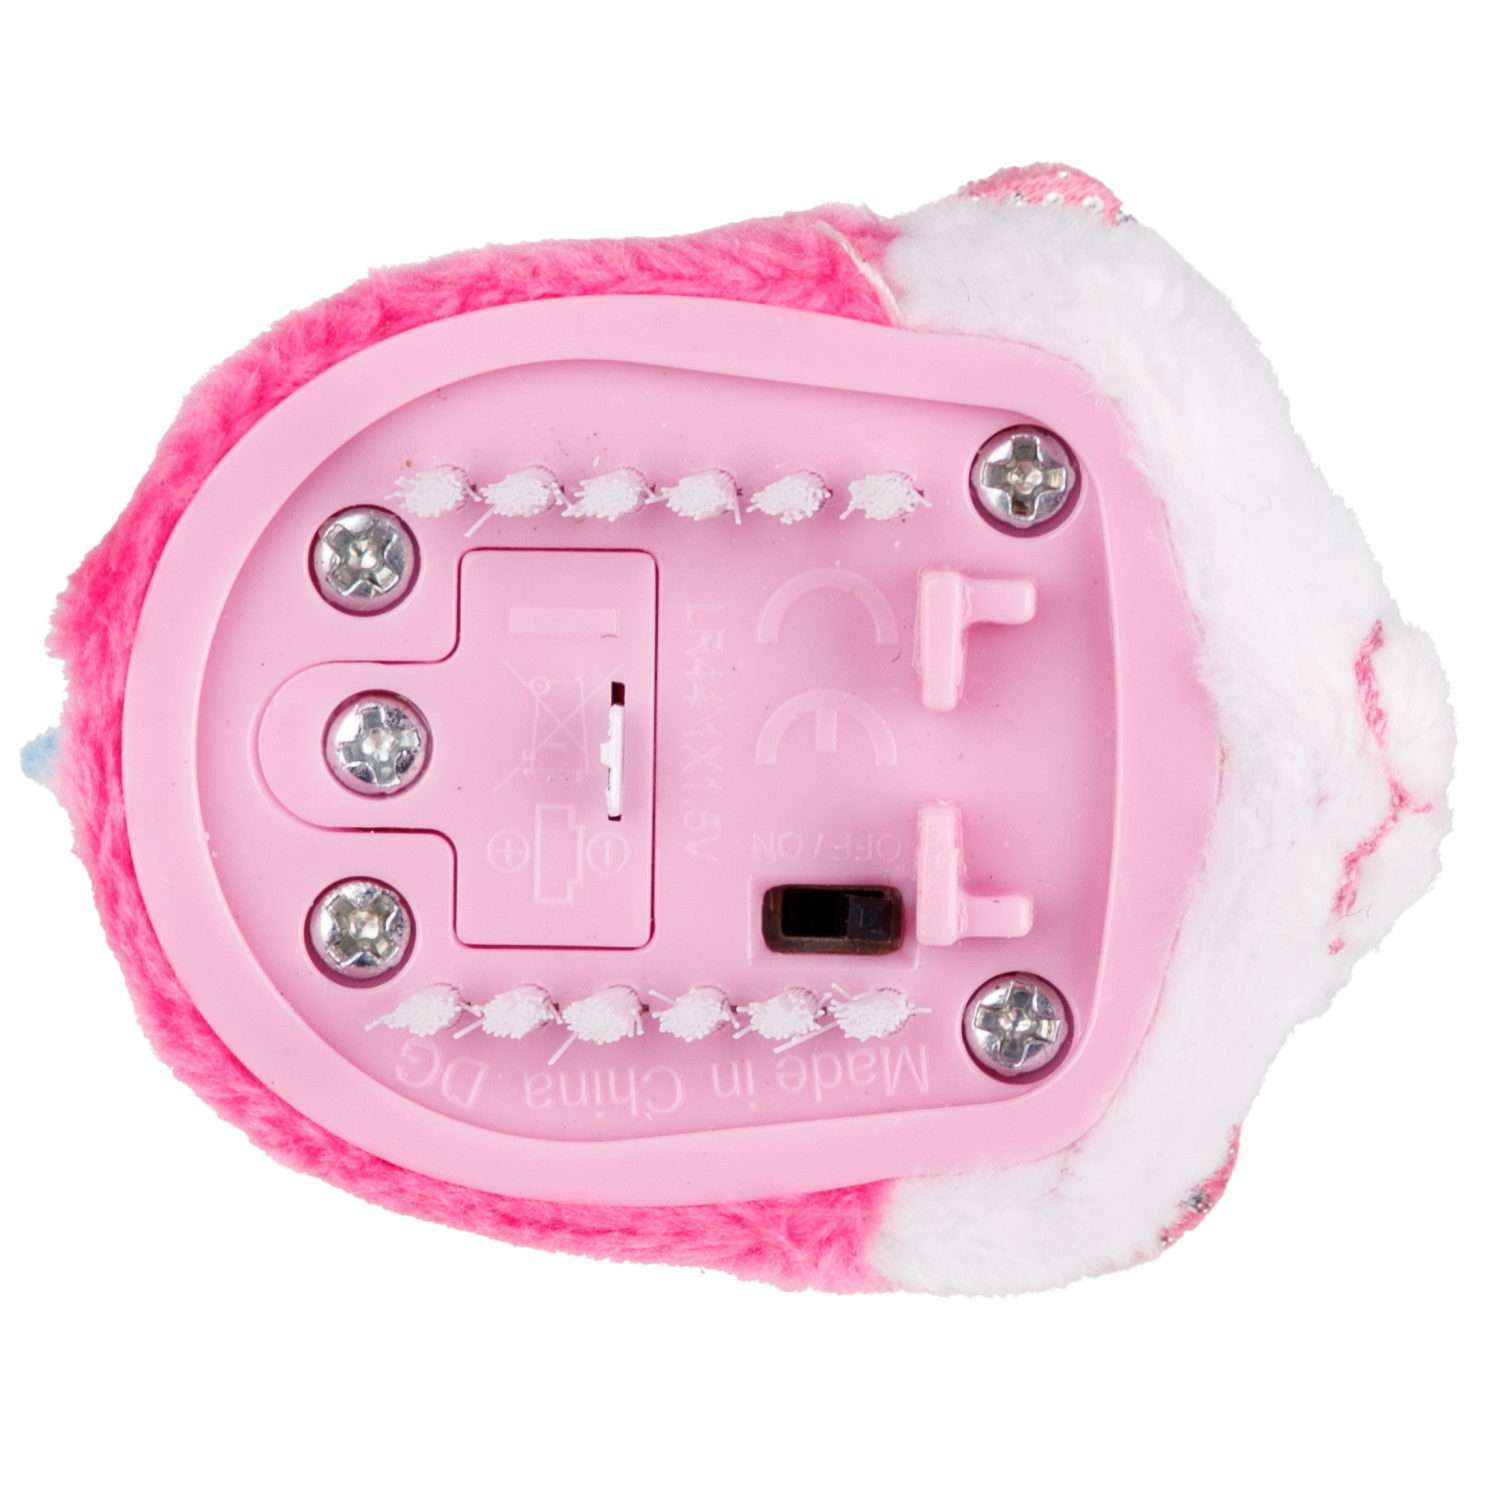 Интерактивная игрушка Хома Дома Хомячок плюшевый розово белый - фото 5